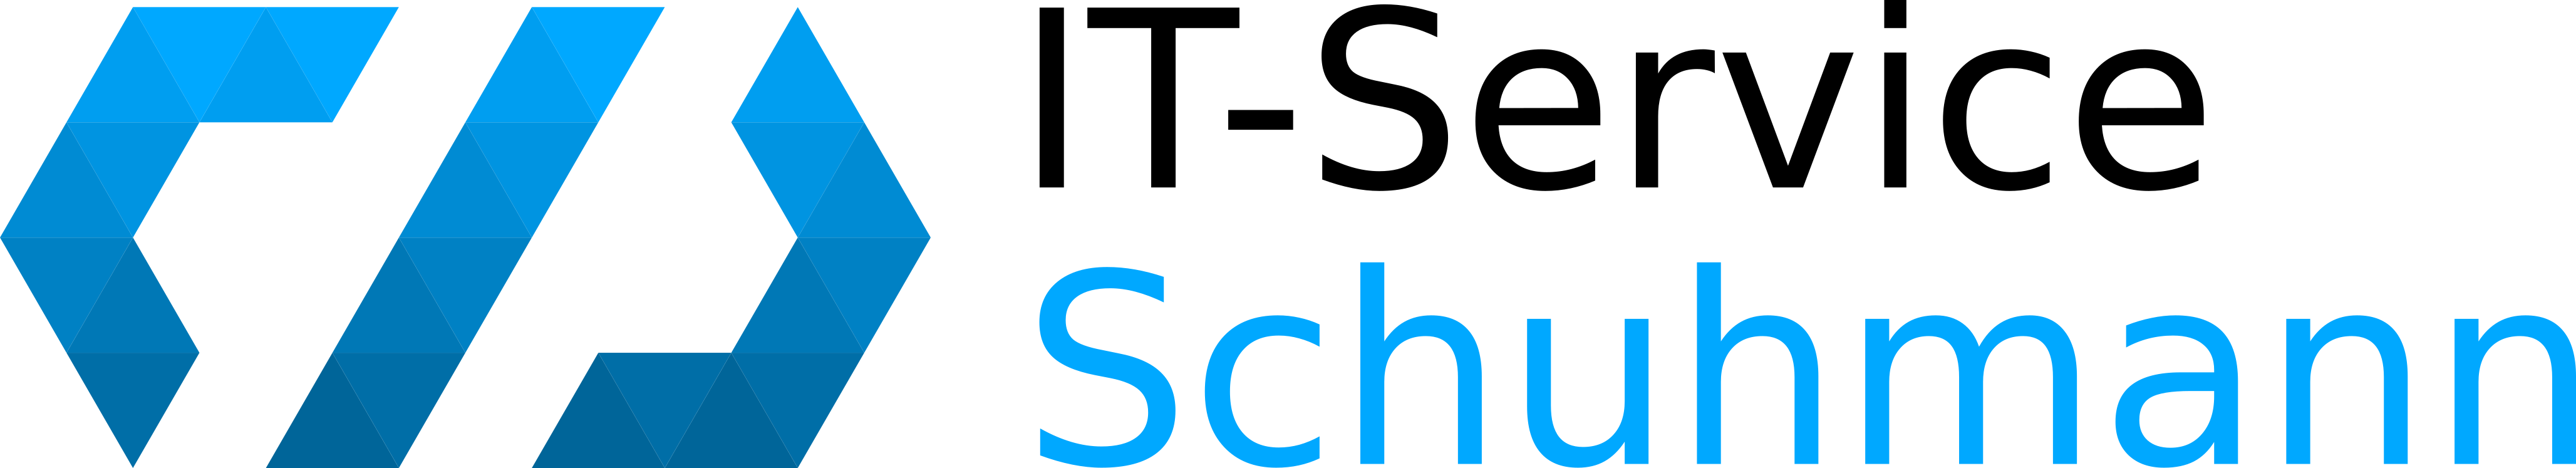 IT-Schuhmann